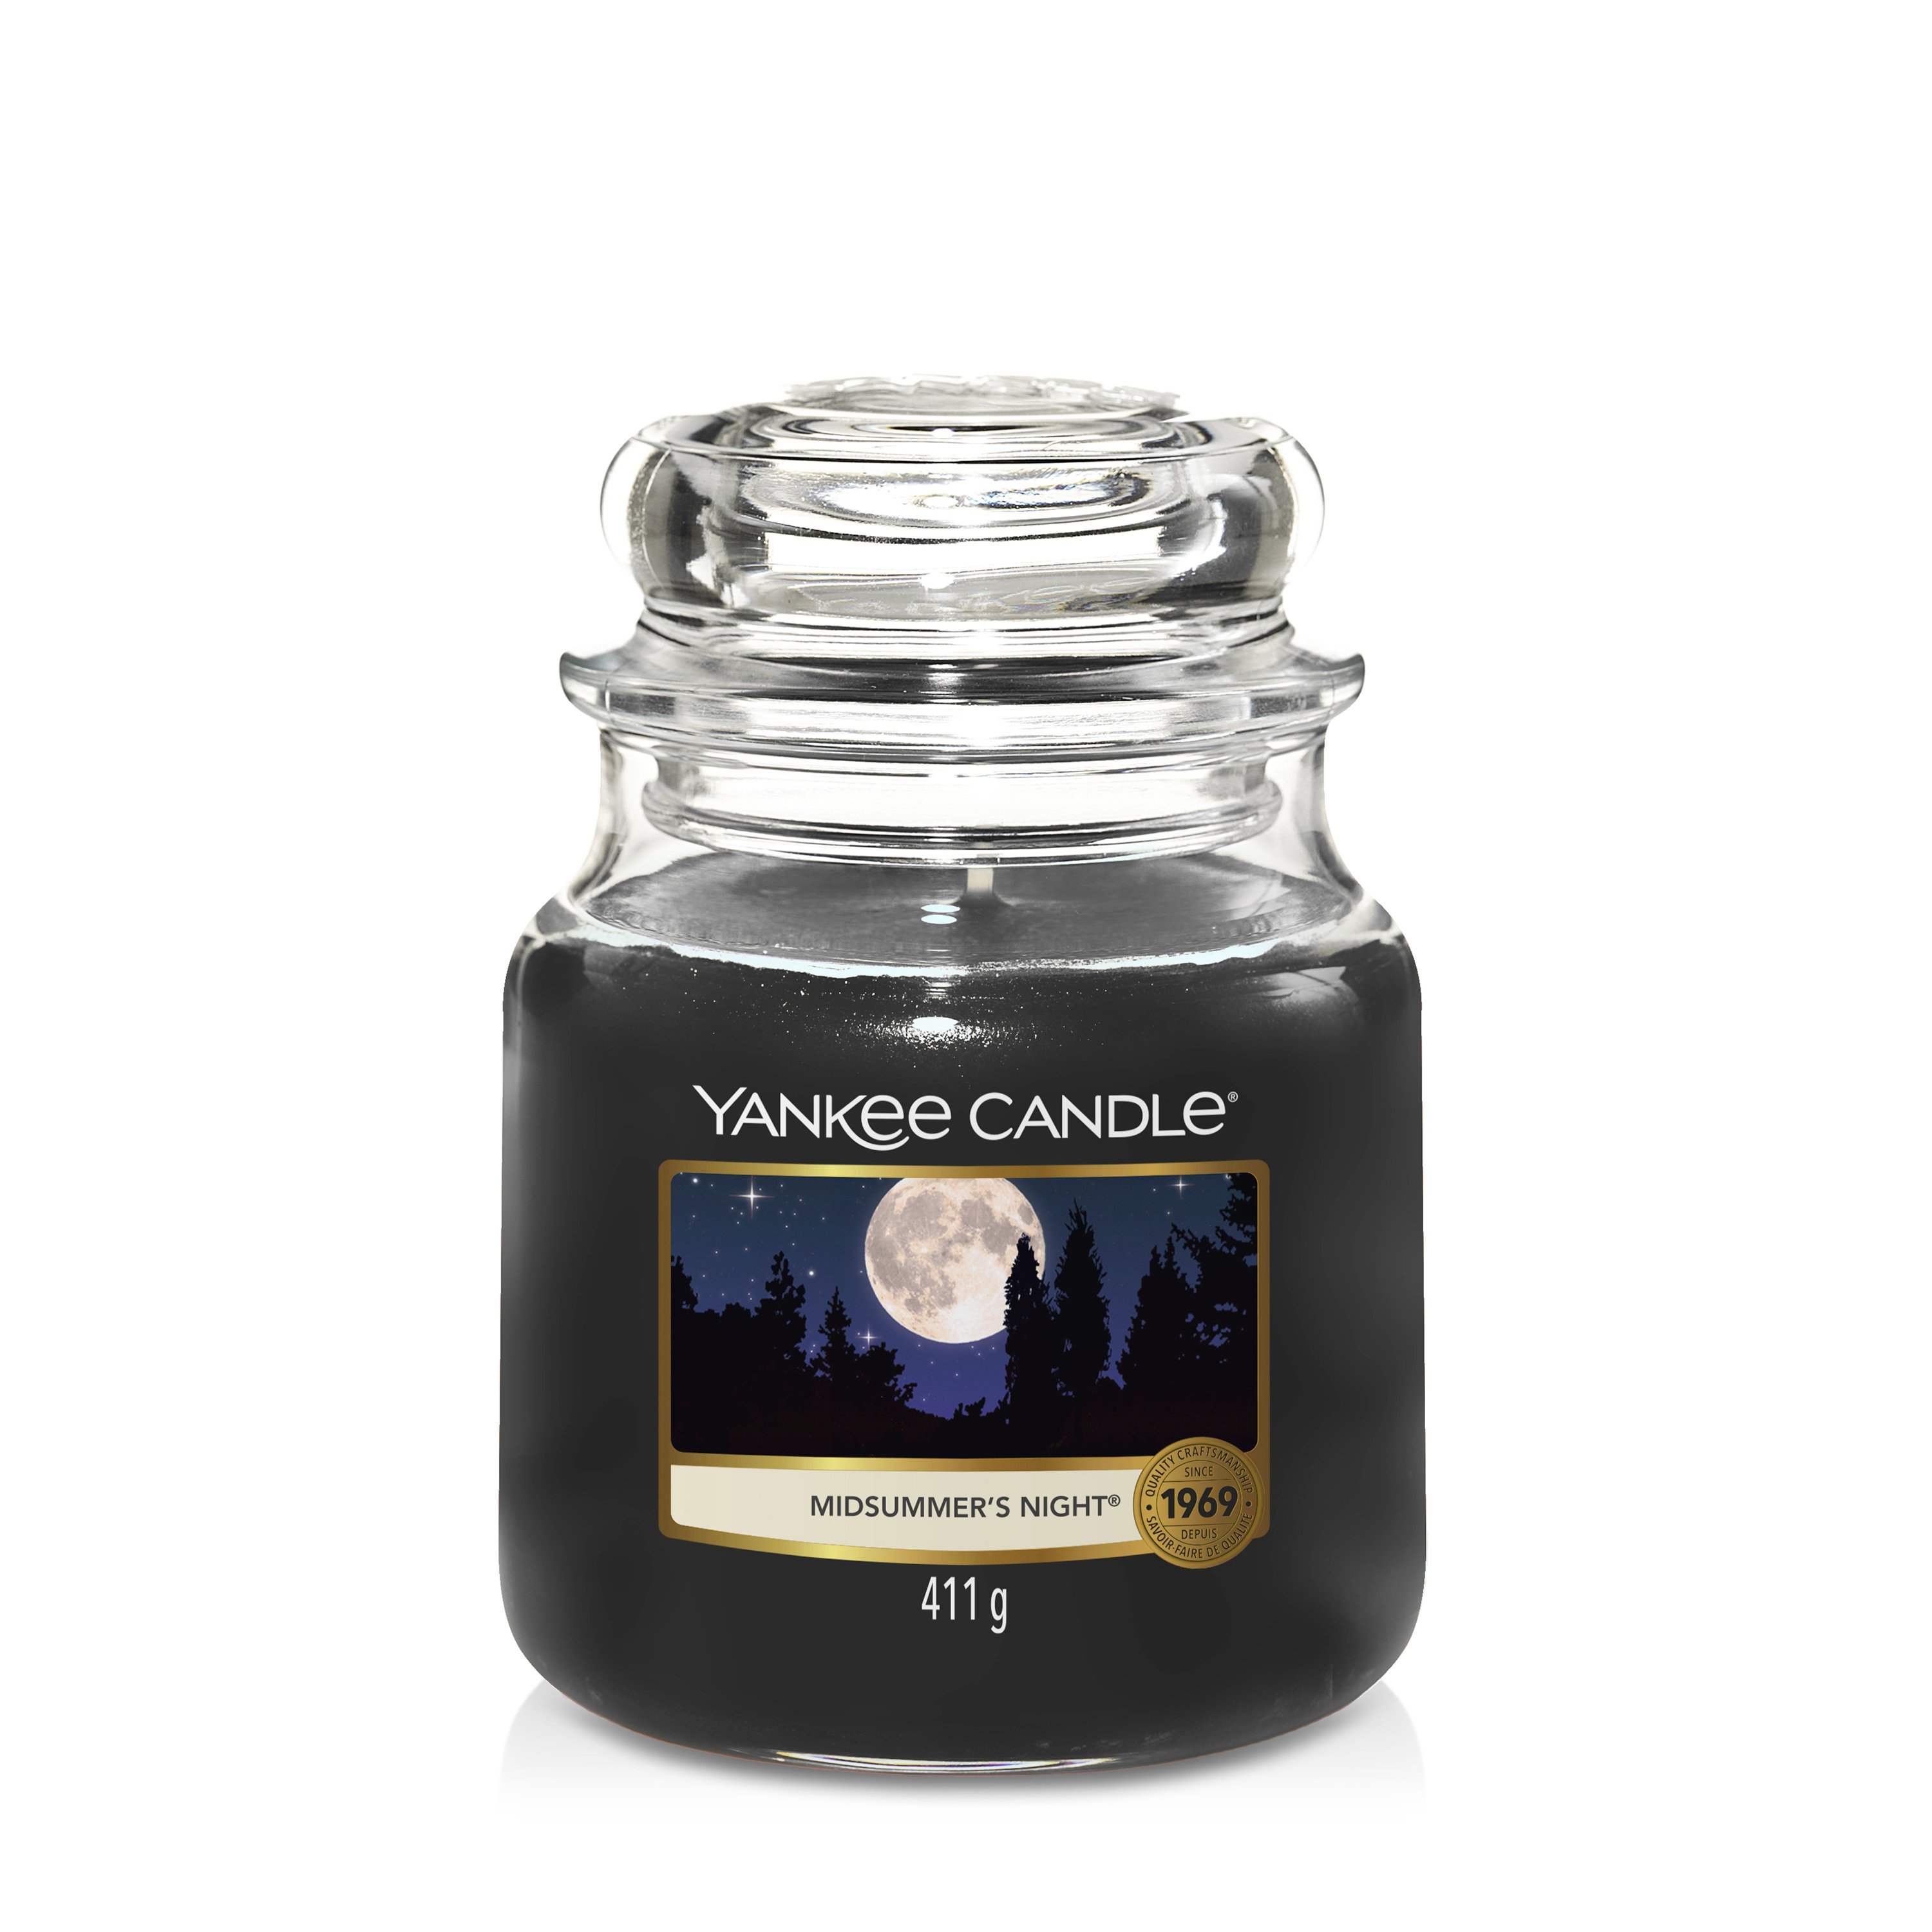 Midsummer's Night® Original Large Jar Candle - Original Jar Candles